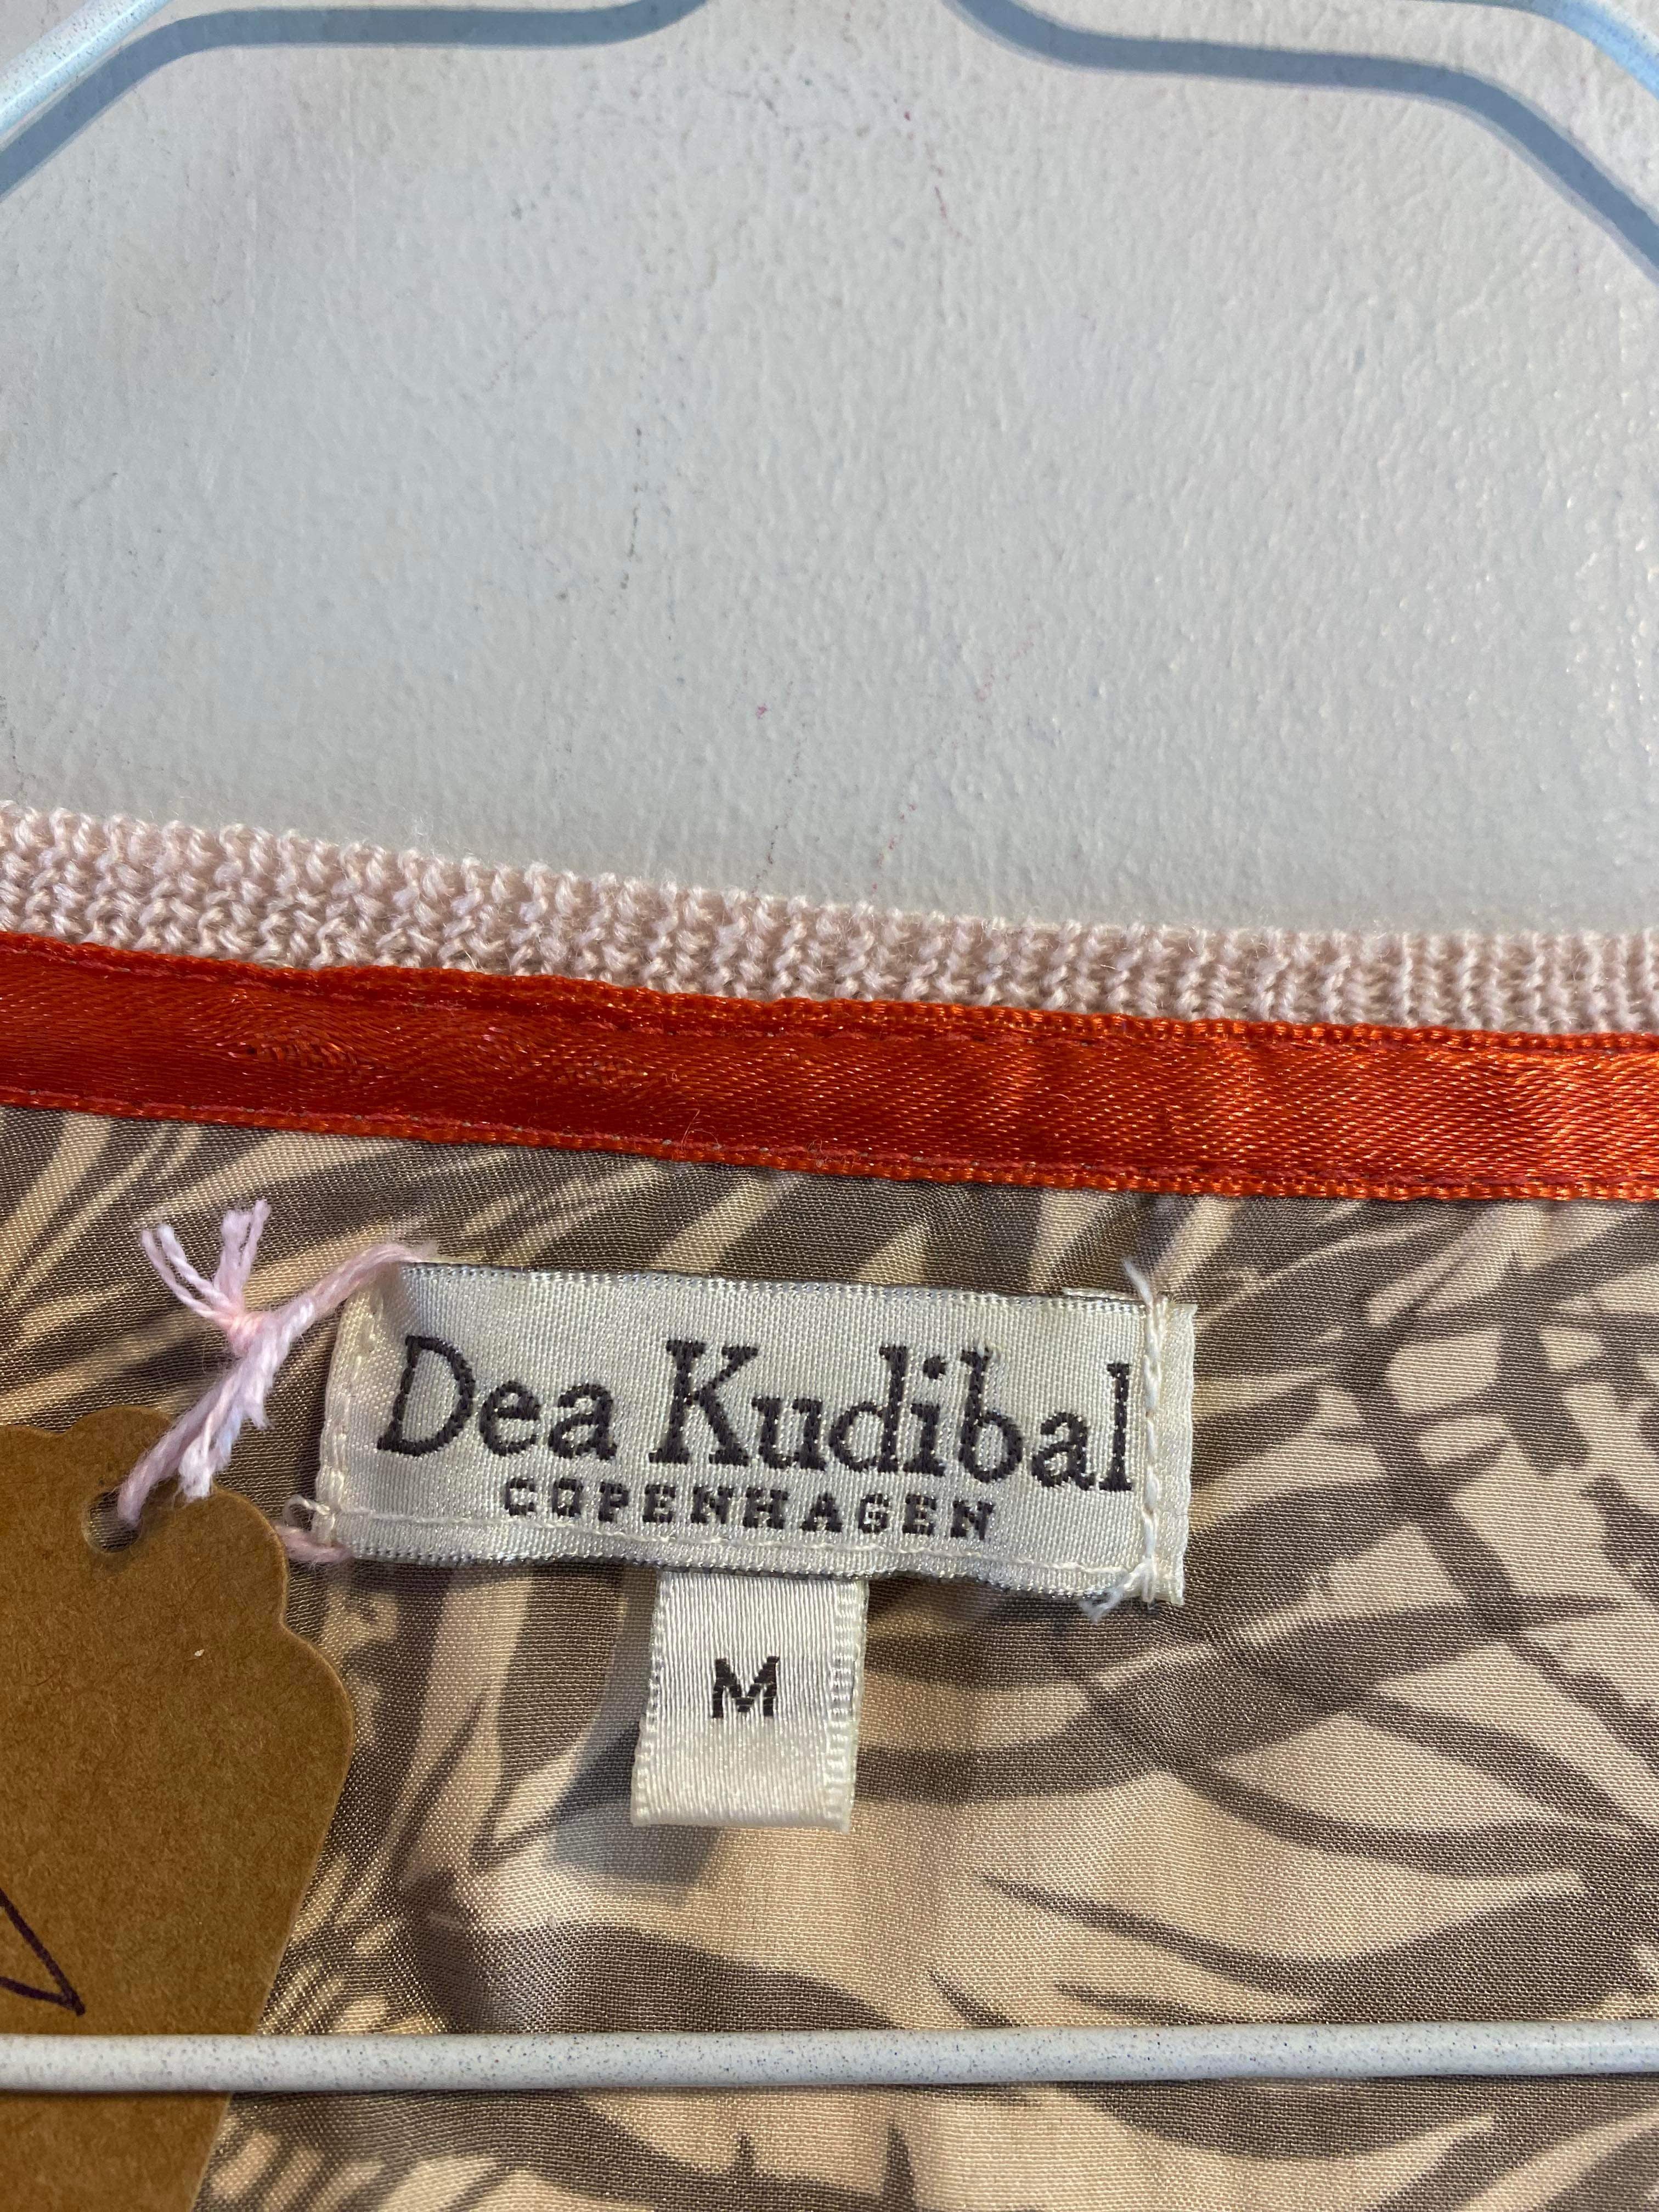 Dea Kudibal - Cardigan - Size: M